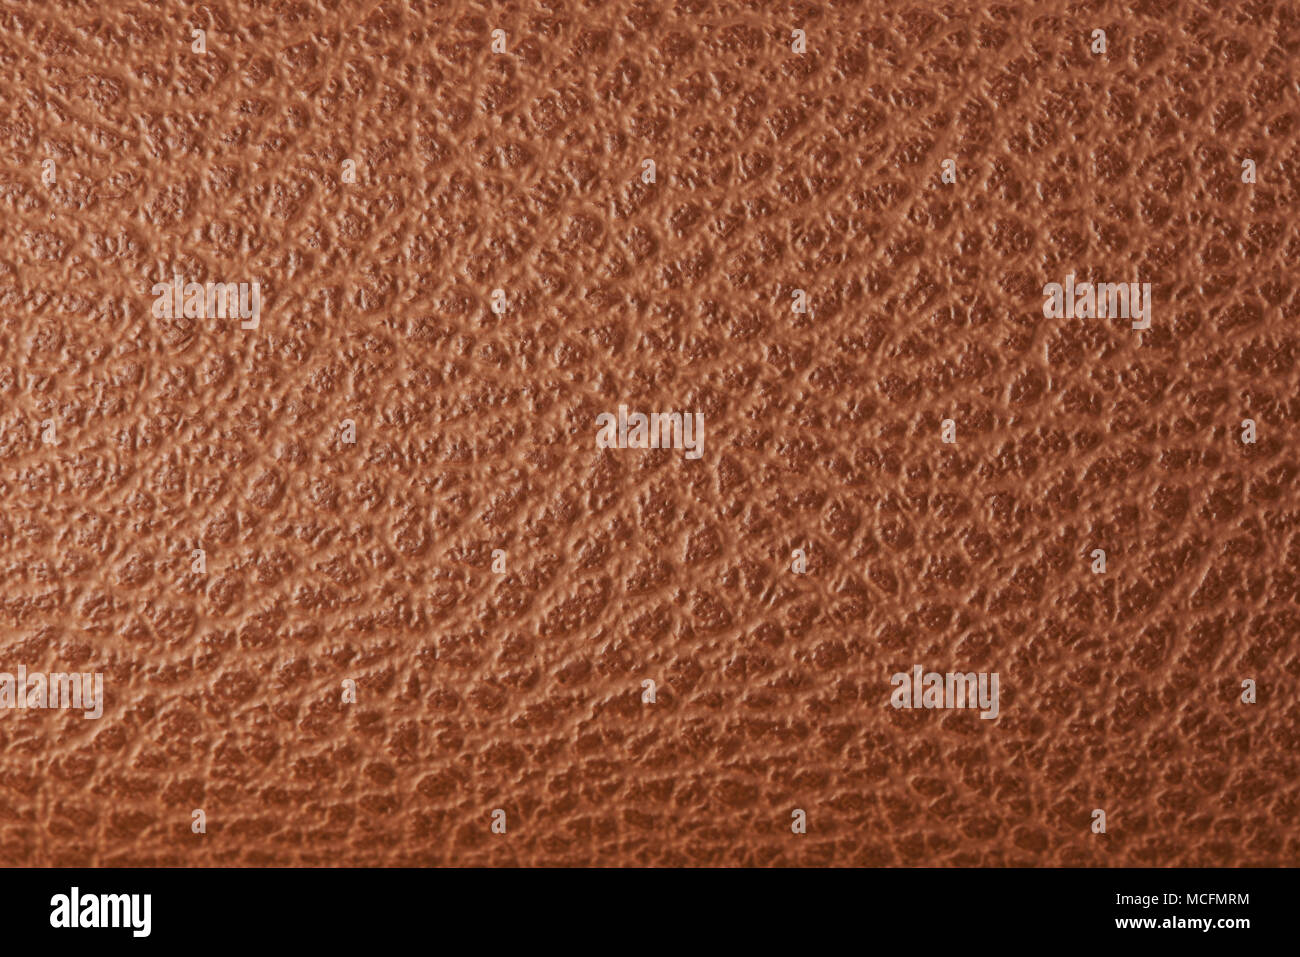 La texture de cuir brun télévision close up. Texture peau de vache Banque D'Images